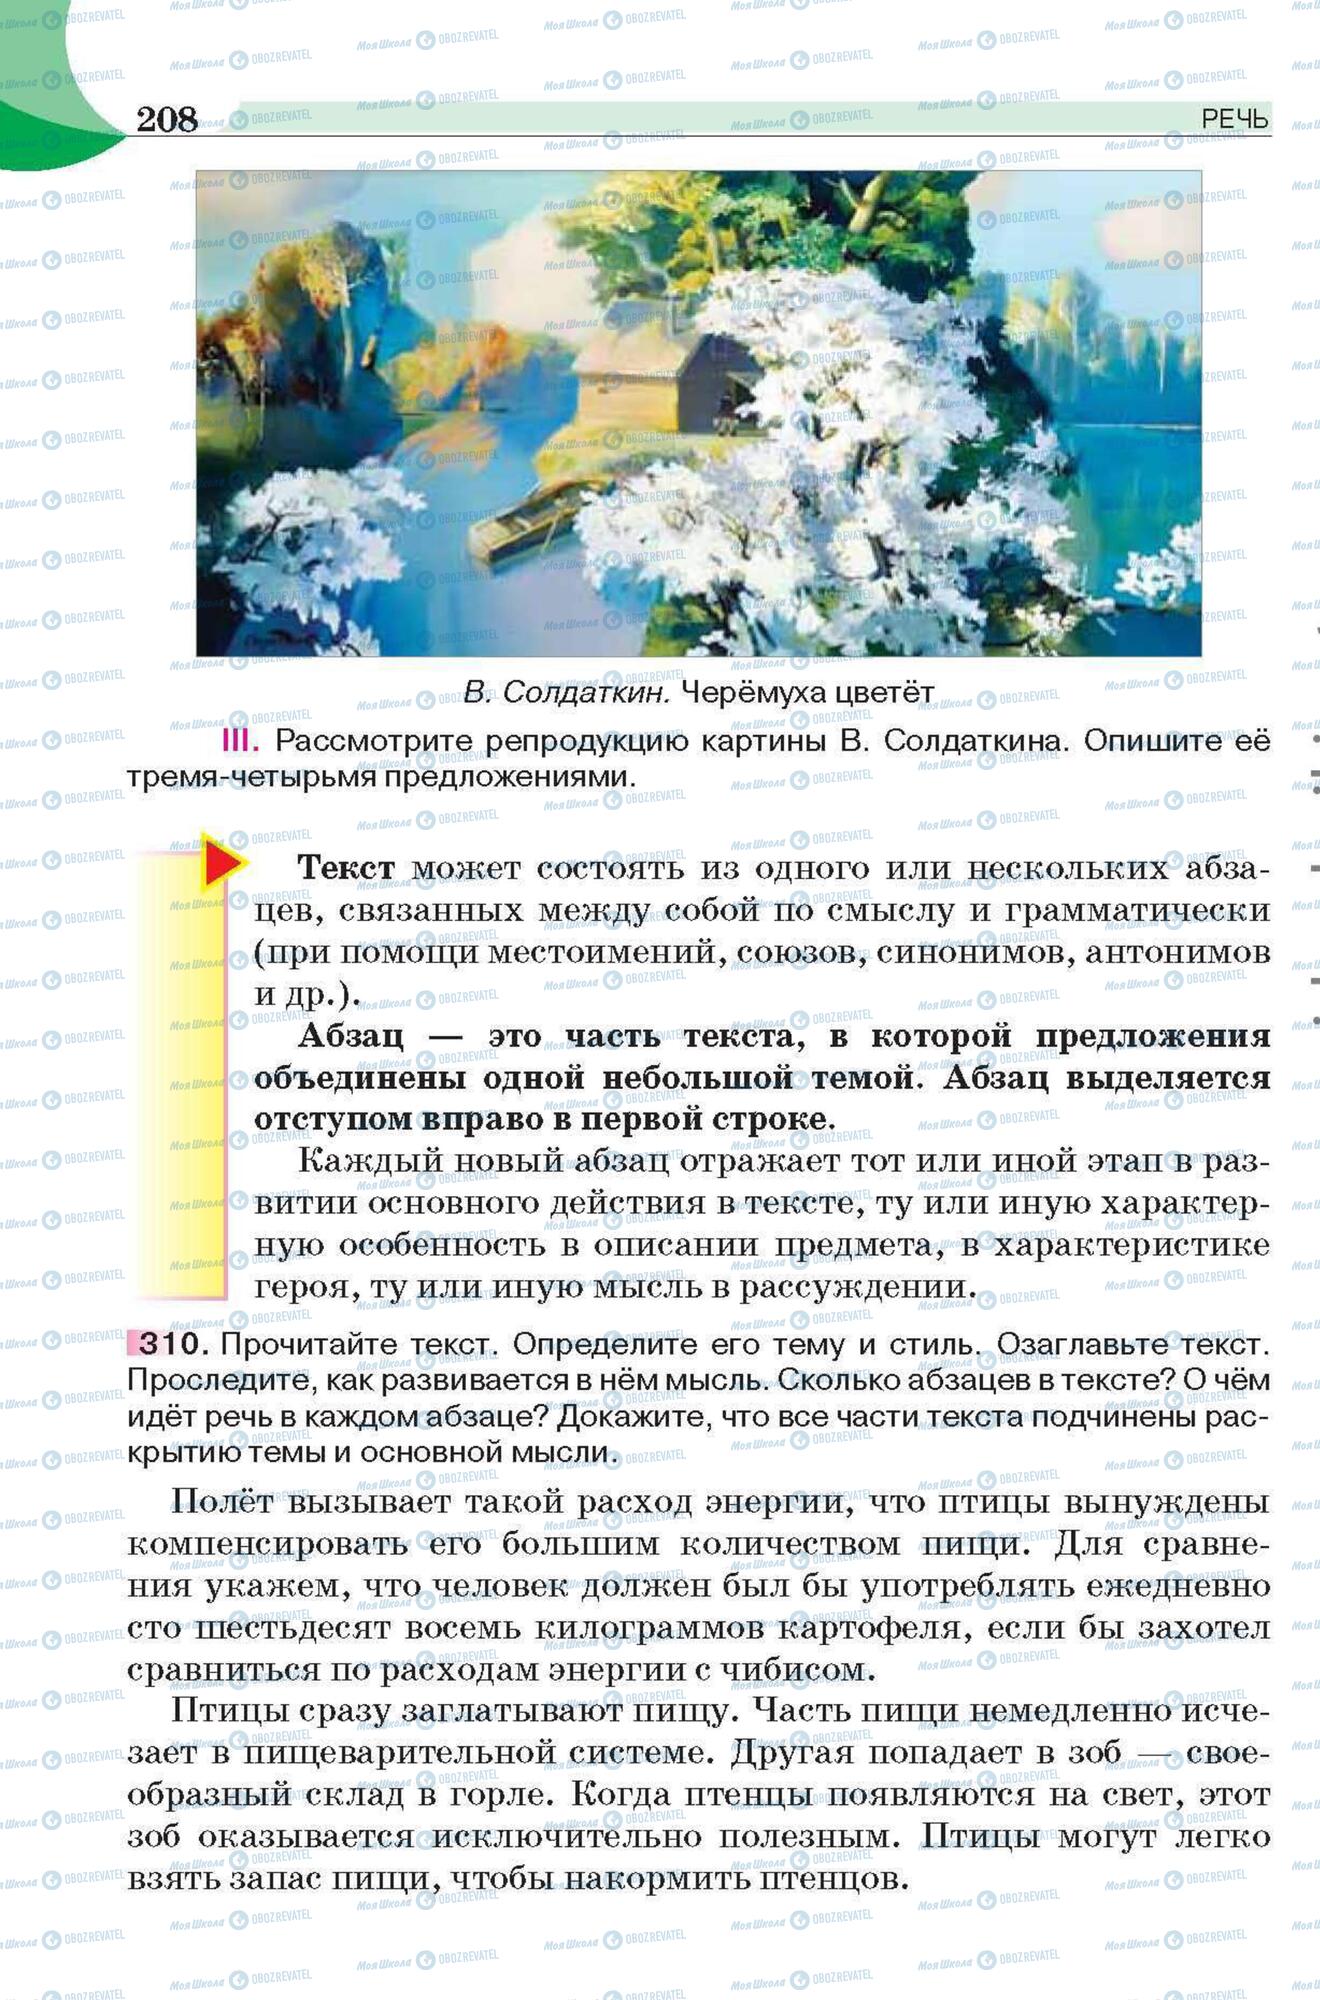 Підручники Російська мова 6 клас сторінка 208